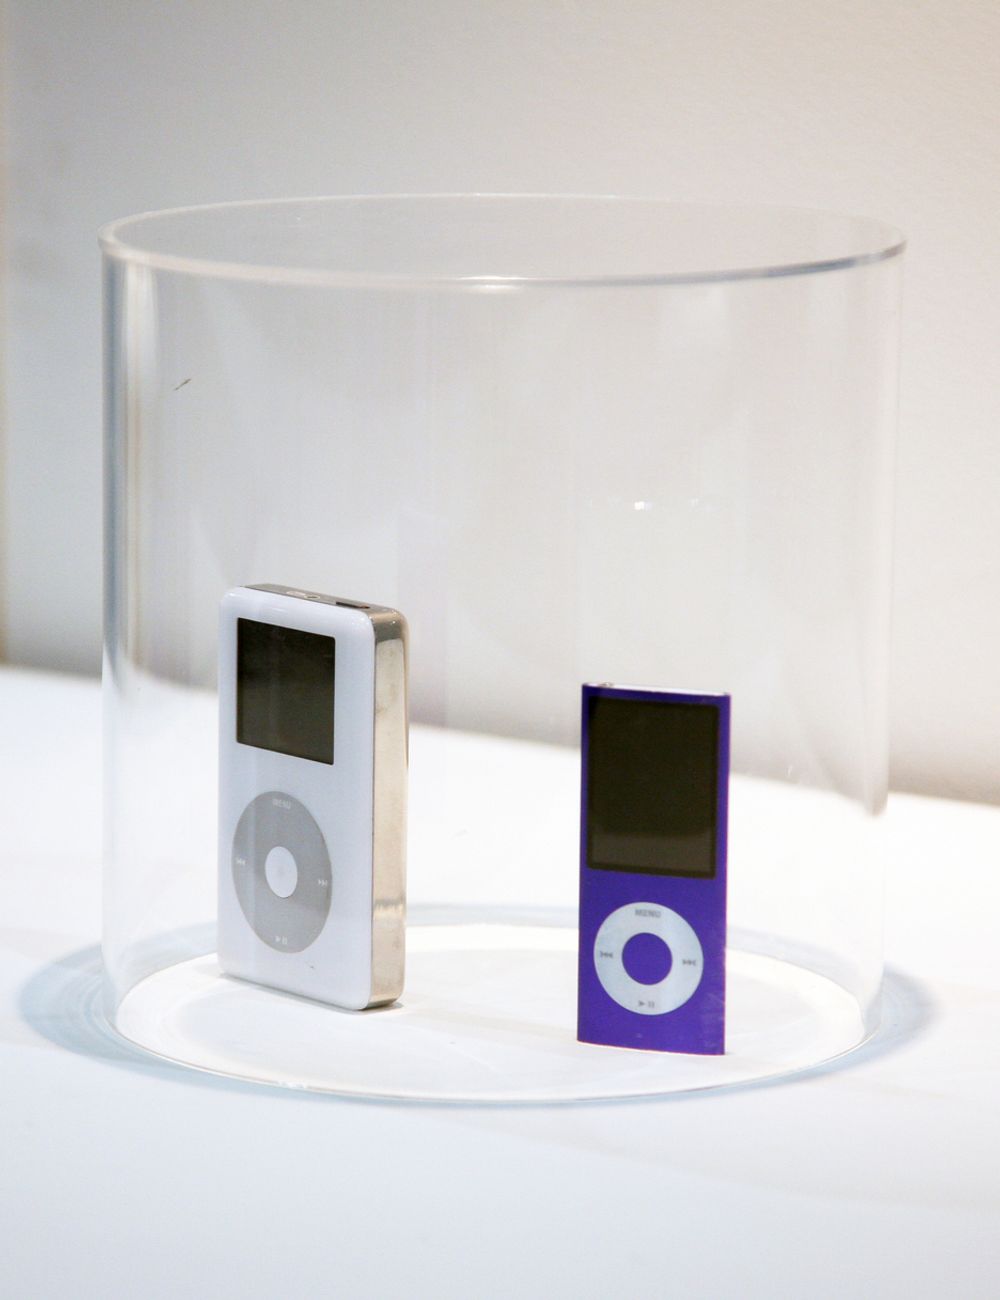 APPLE: Dette er den første Ipoden fra 2001 (til venstre). Ipoden, som altså fyller ti år i år, skulle vise seg å bli en pengemaskin for Apple. Legg merke til tykkelsen sammenliknet med den noe nyere Ipod Nano (til høyre).